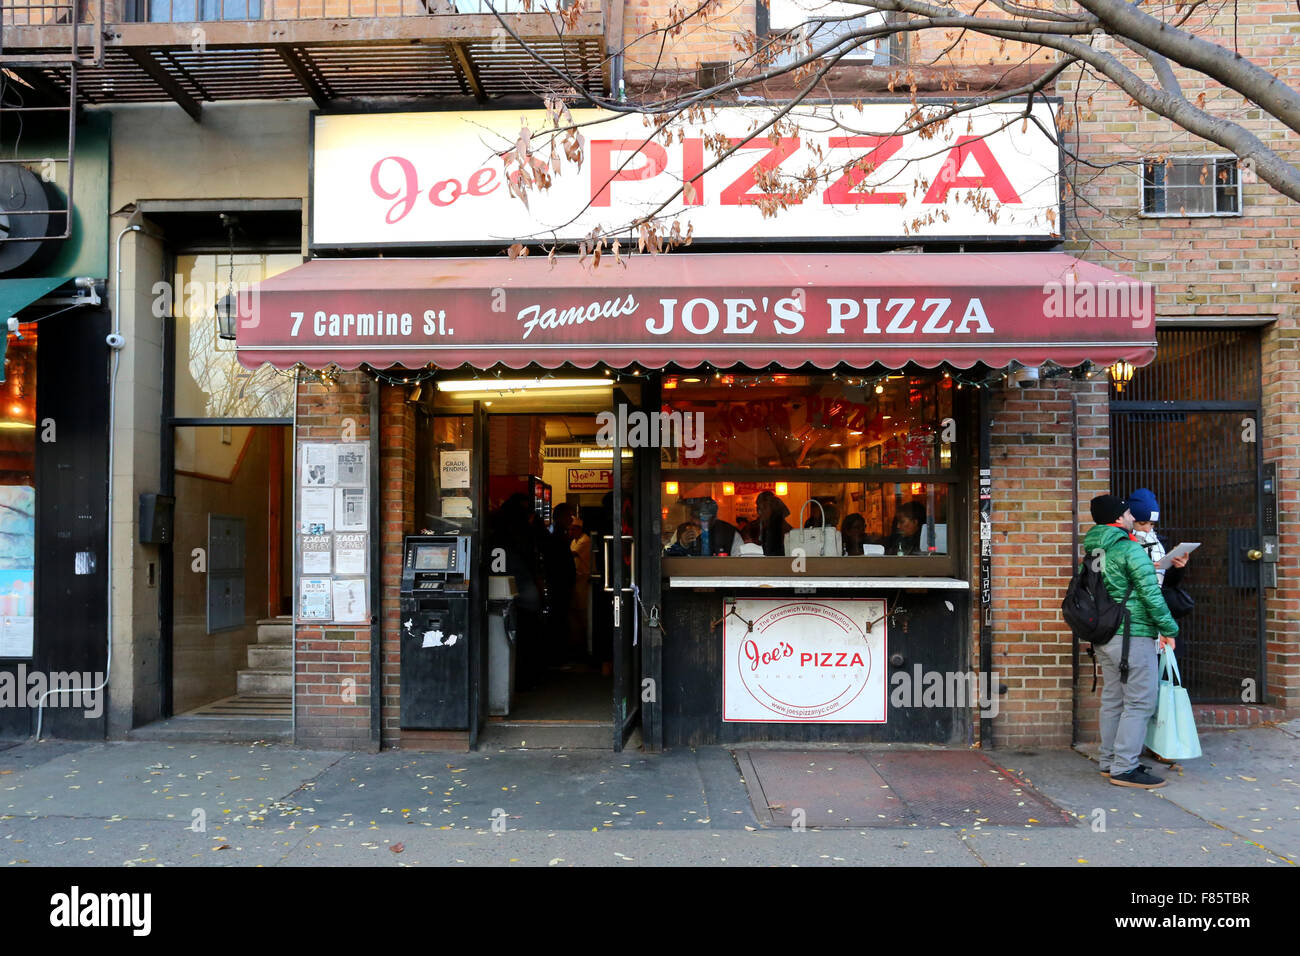 Joe's Pizza Greenwich Village, Carmine 7 St, New York, NY devanture extérieure d'une pizzeria dans le quartier de Greenwich Village de Manhattan. Banque D'Images